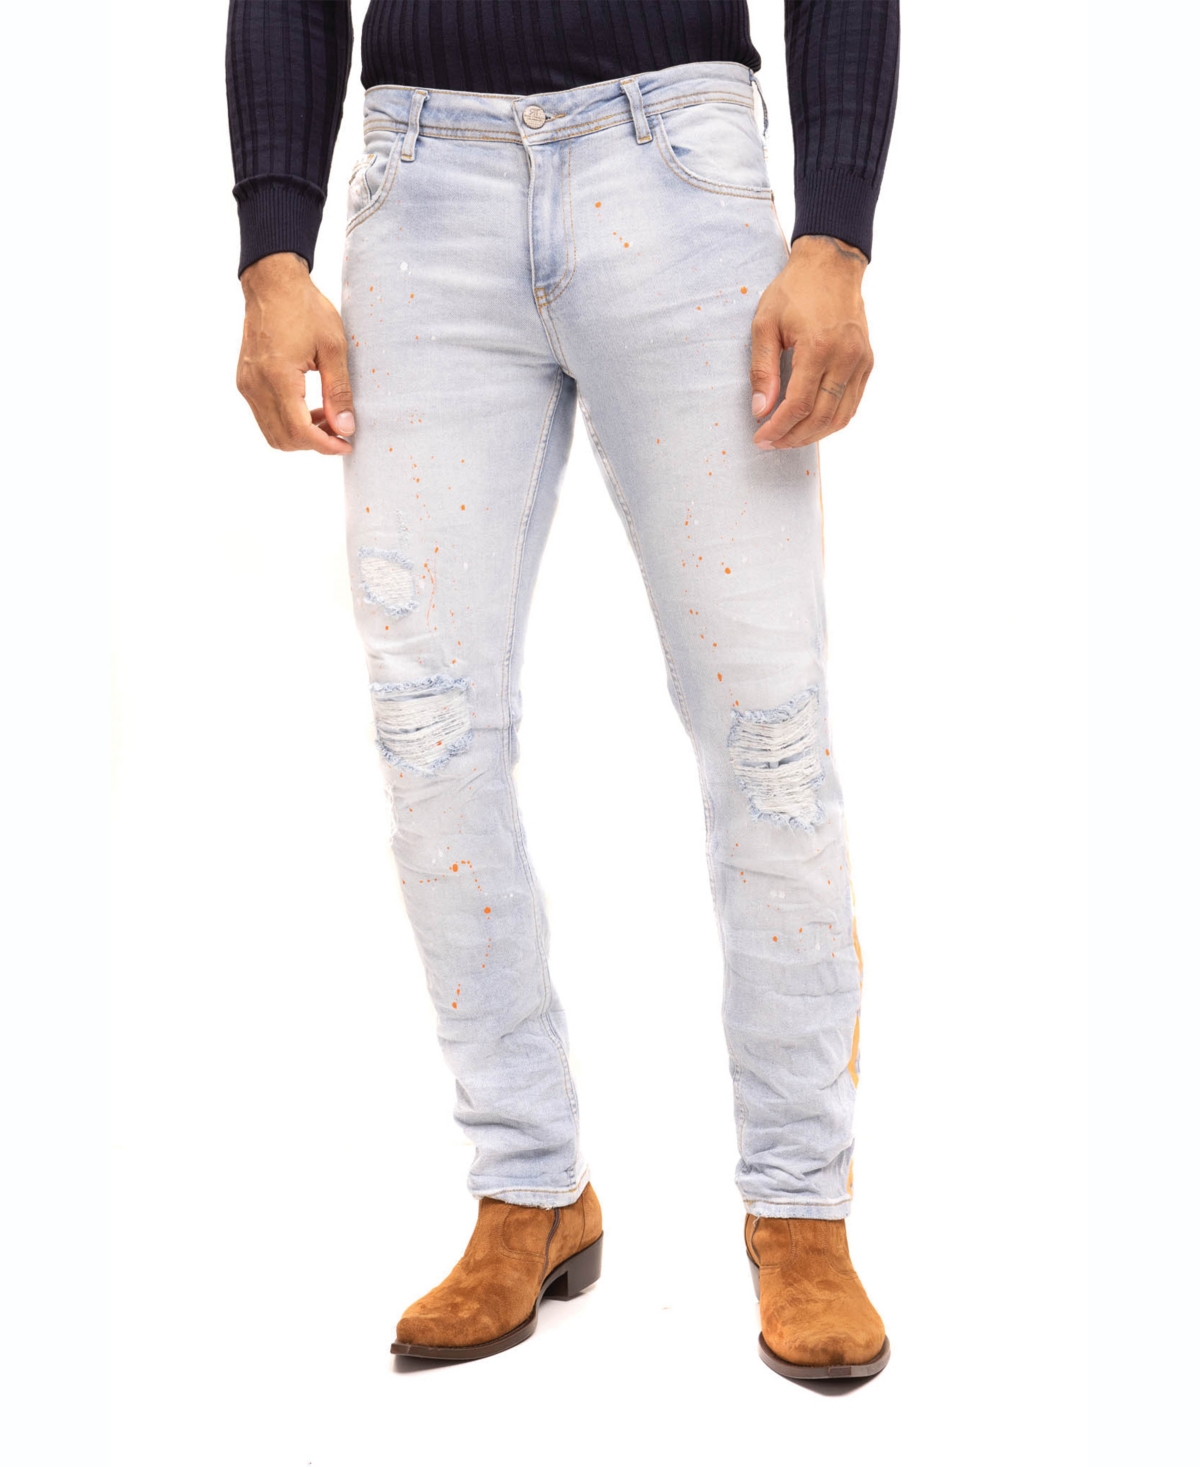 Men's Modern Splattered Stripe Jeans - Indigo